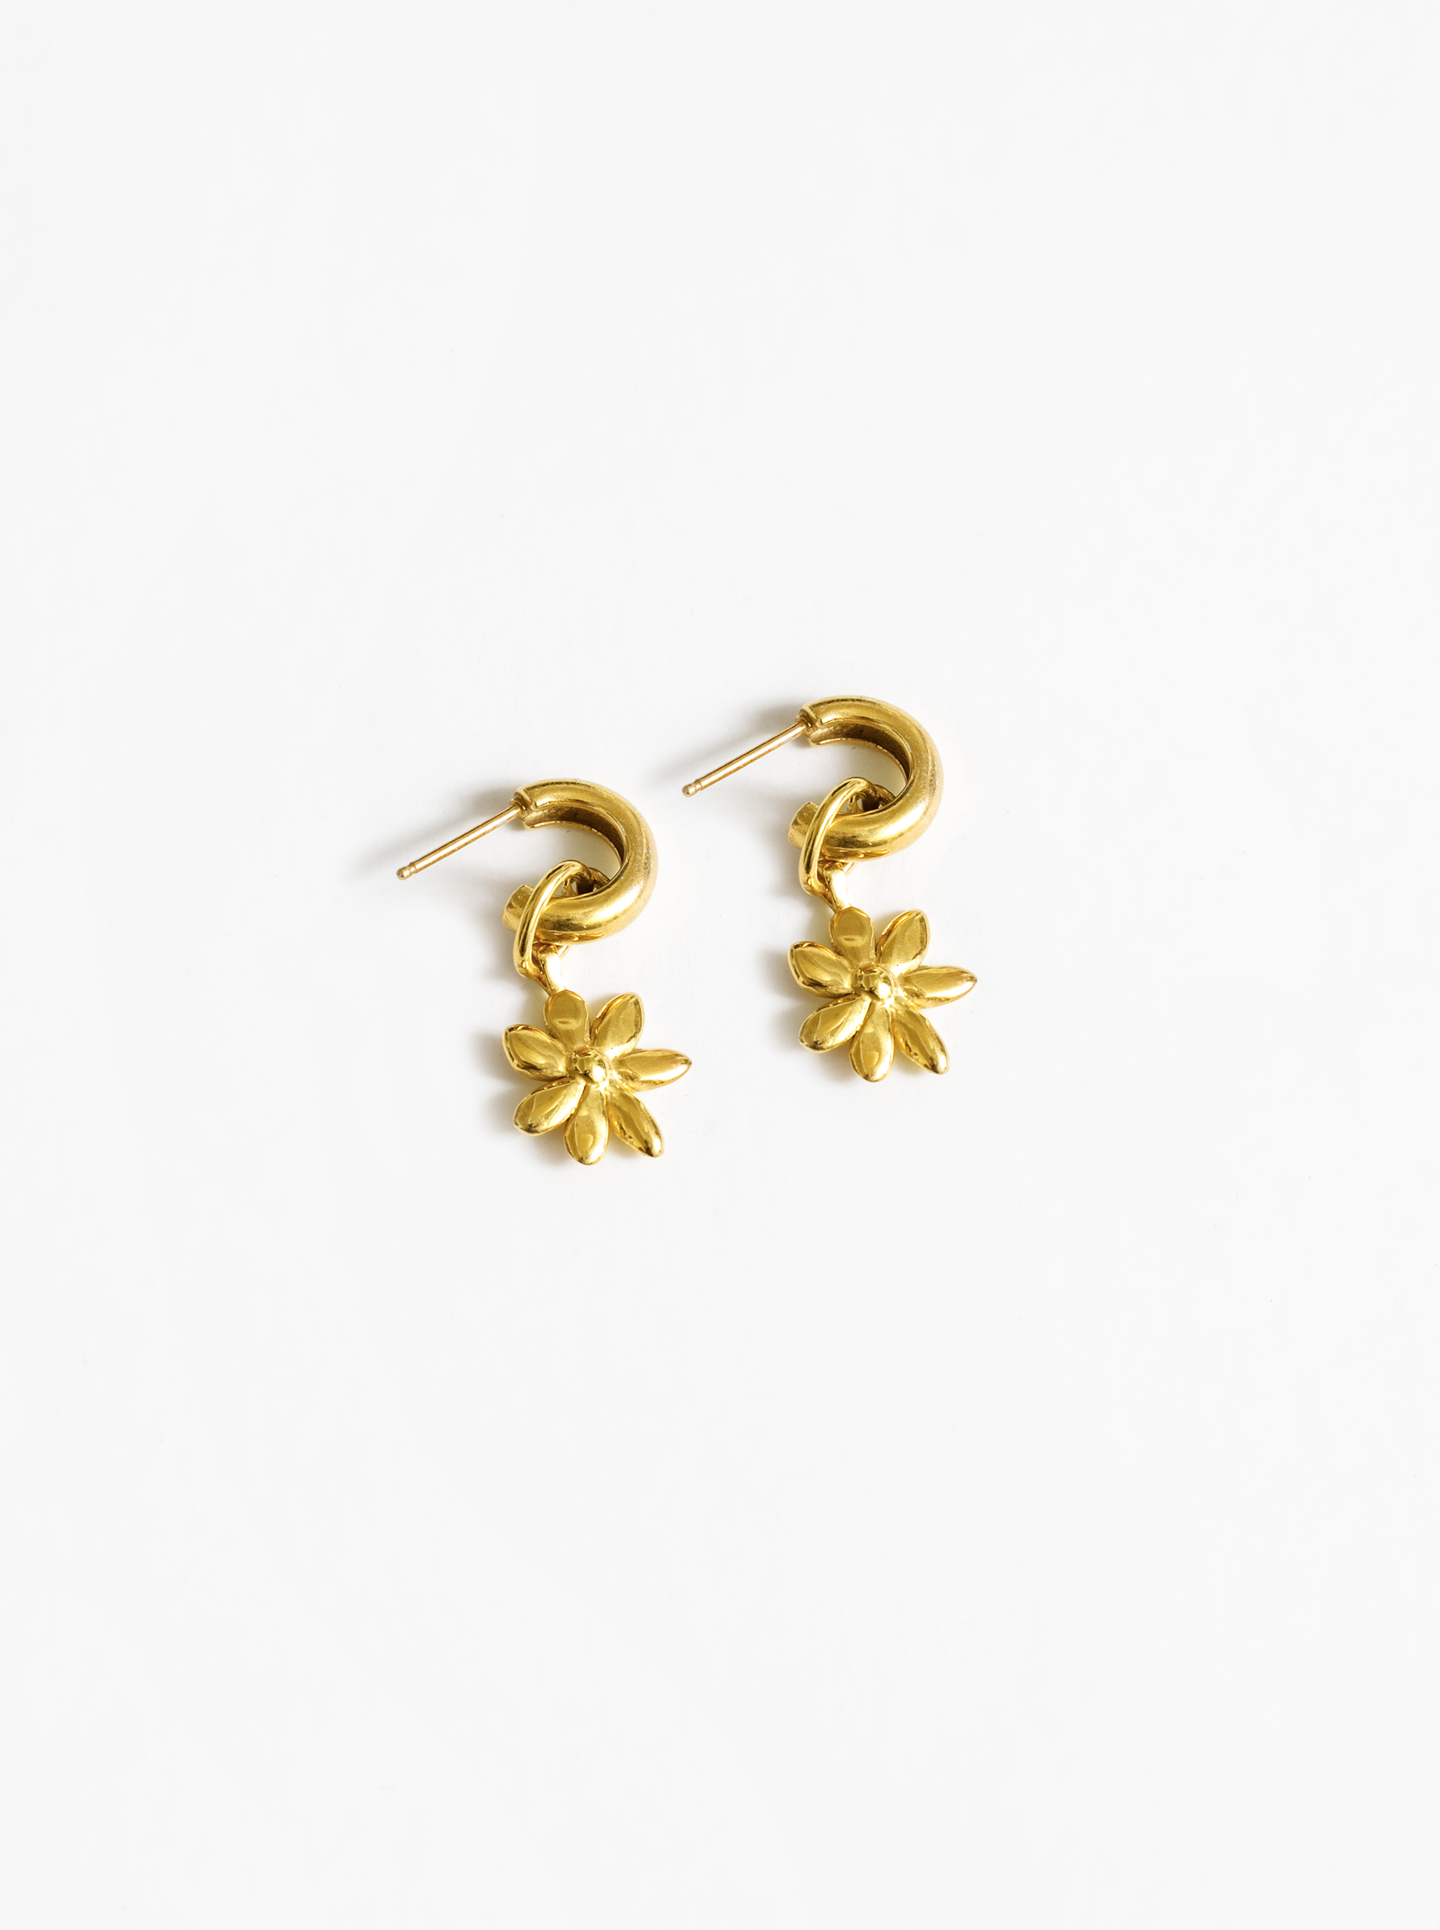 Flower Charm Earrings in Gold